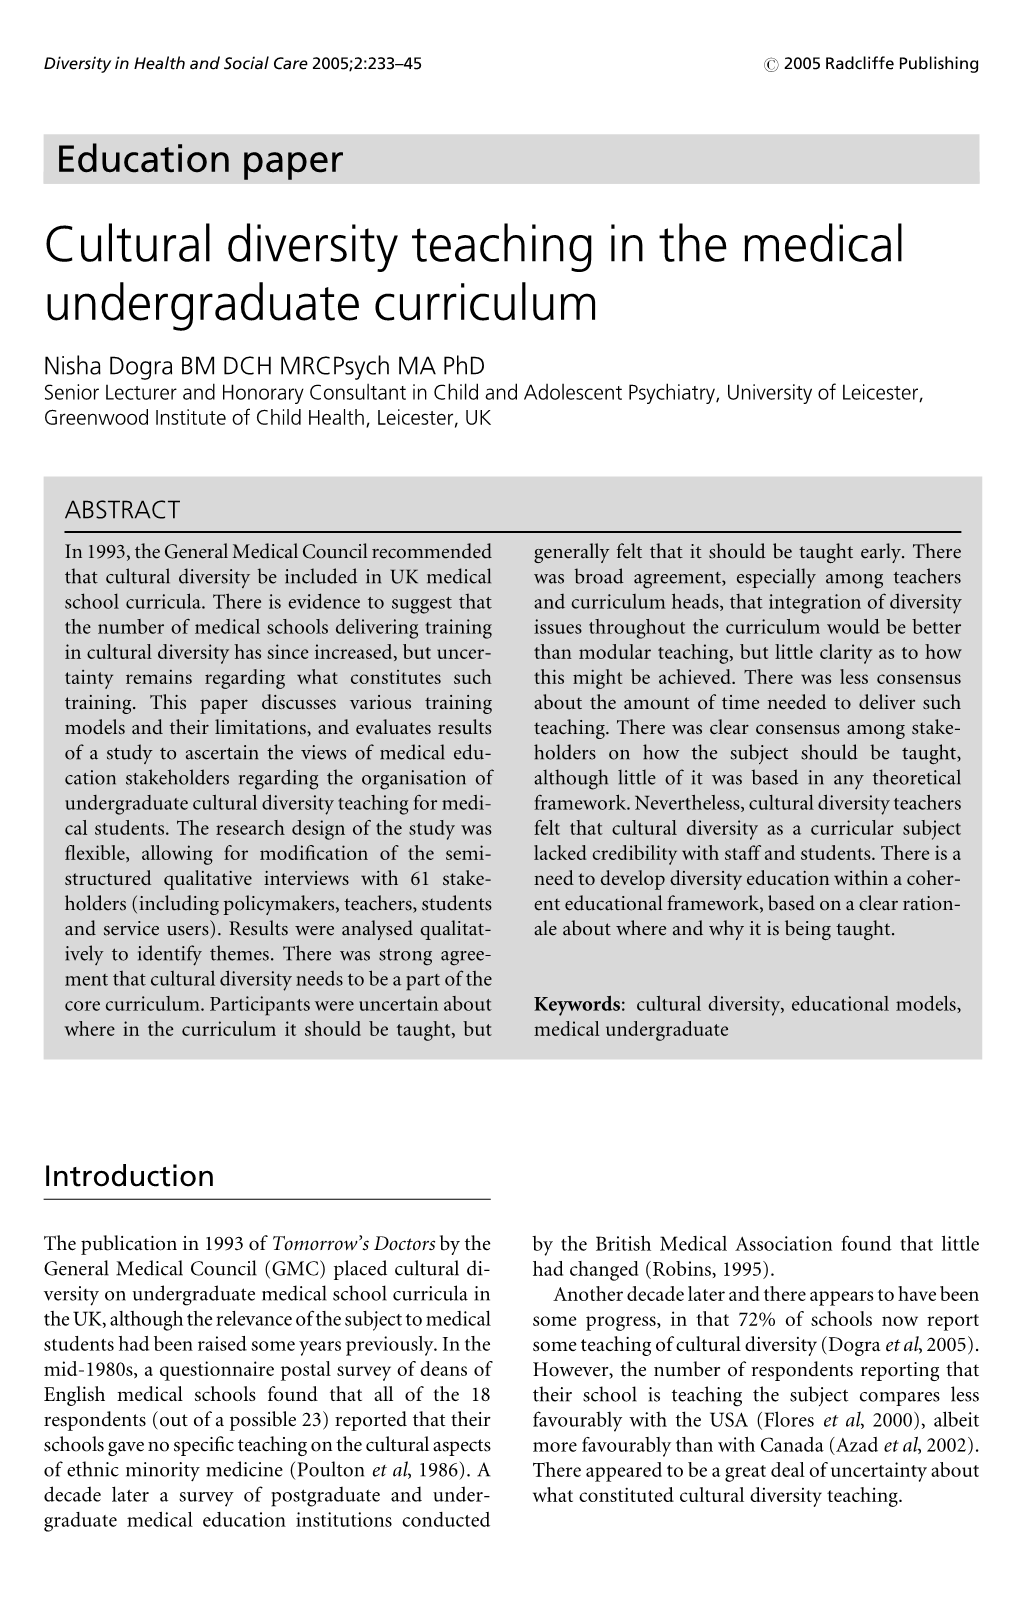 Cultural Diversity Teaching in the Medical Undergraduate Curriculum